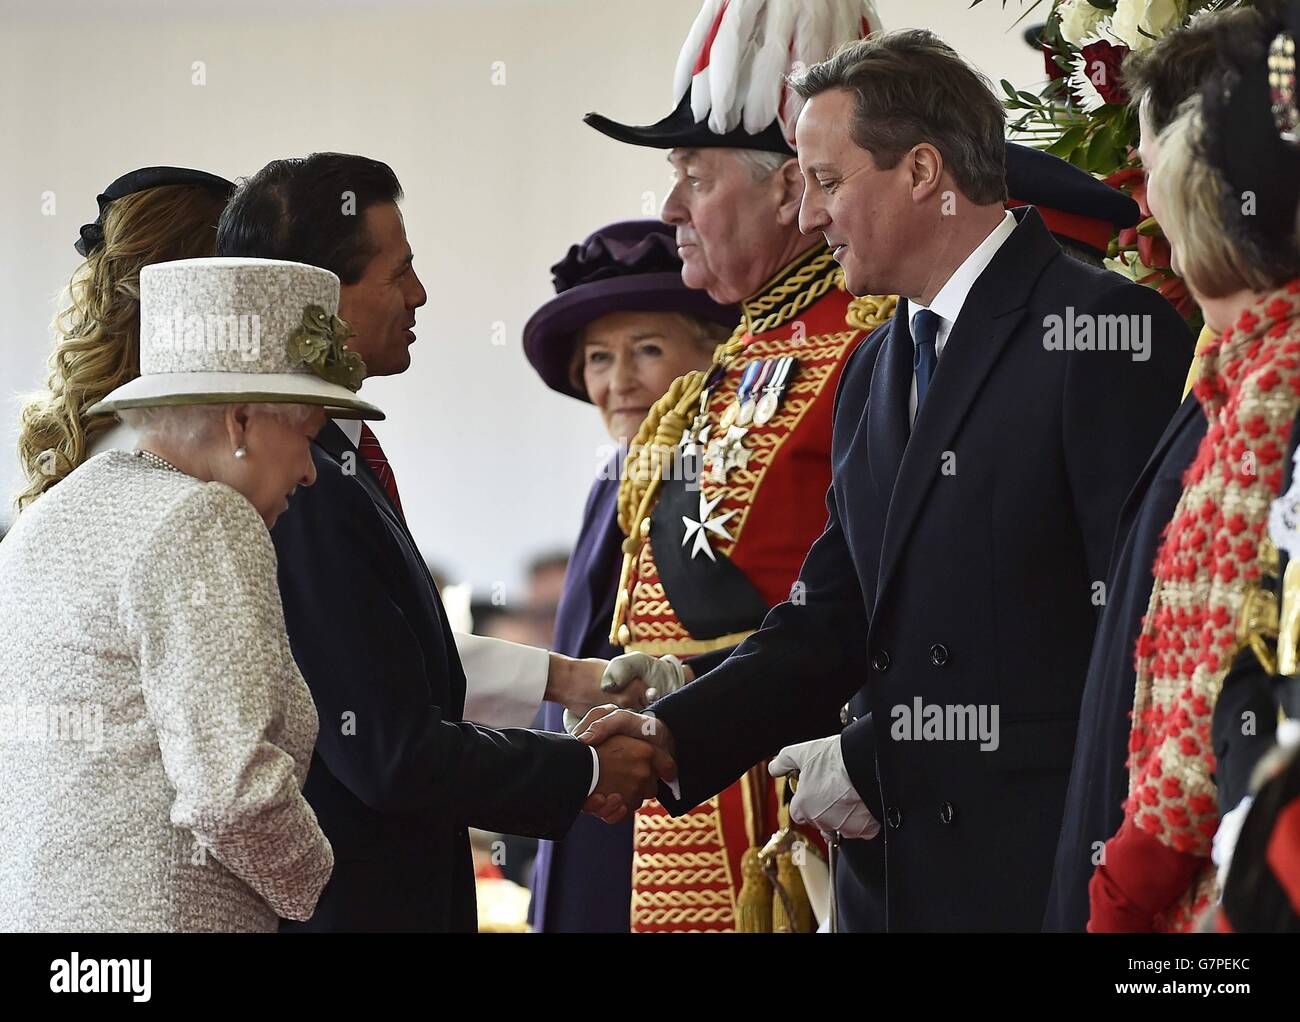 Le président mexicain Enrique Pena Nieto (deuxième à gauche) est accueilli par le Premier ministre David Cameron (à droite) lors d'une cérémonie d'accueil à Horse Guards, le premier d'une visite d'État de trois jours en Grande-Bretagne. Banque D'Images